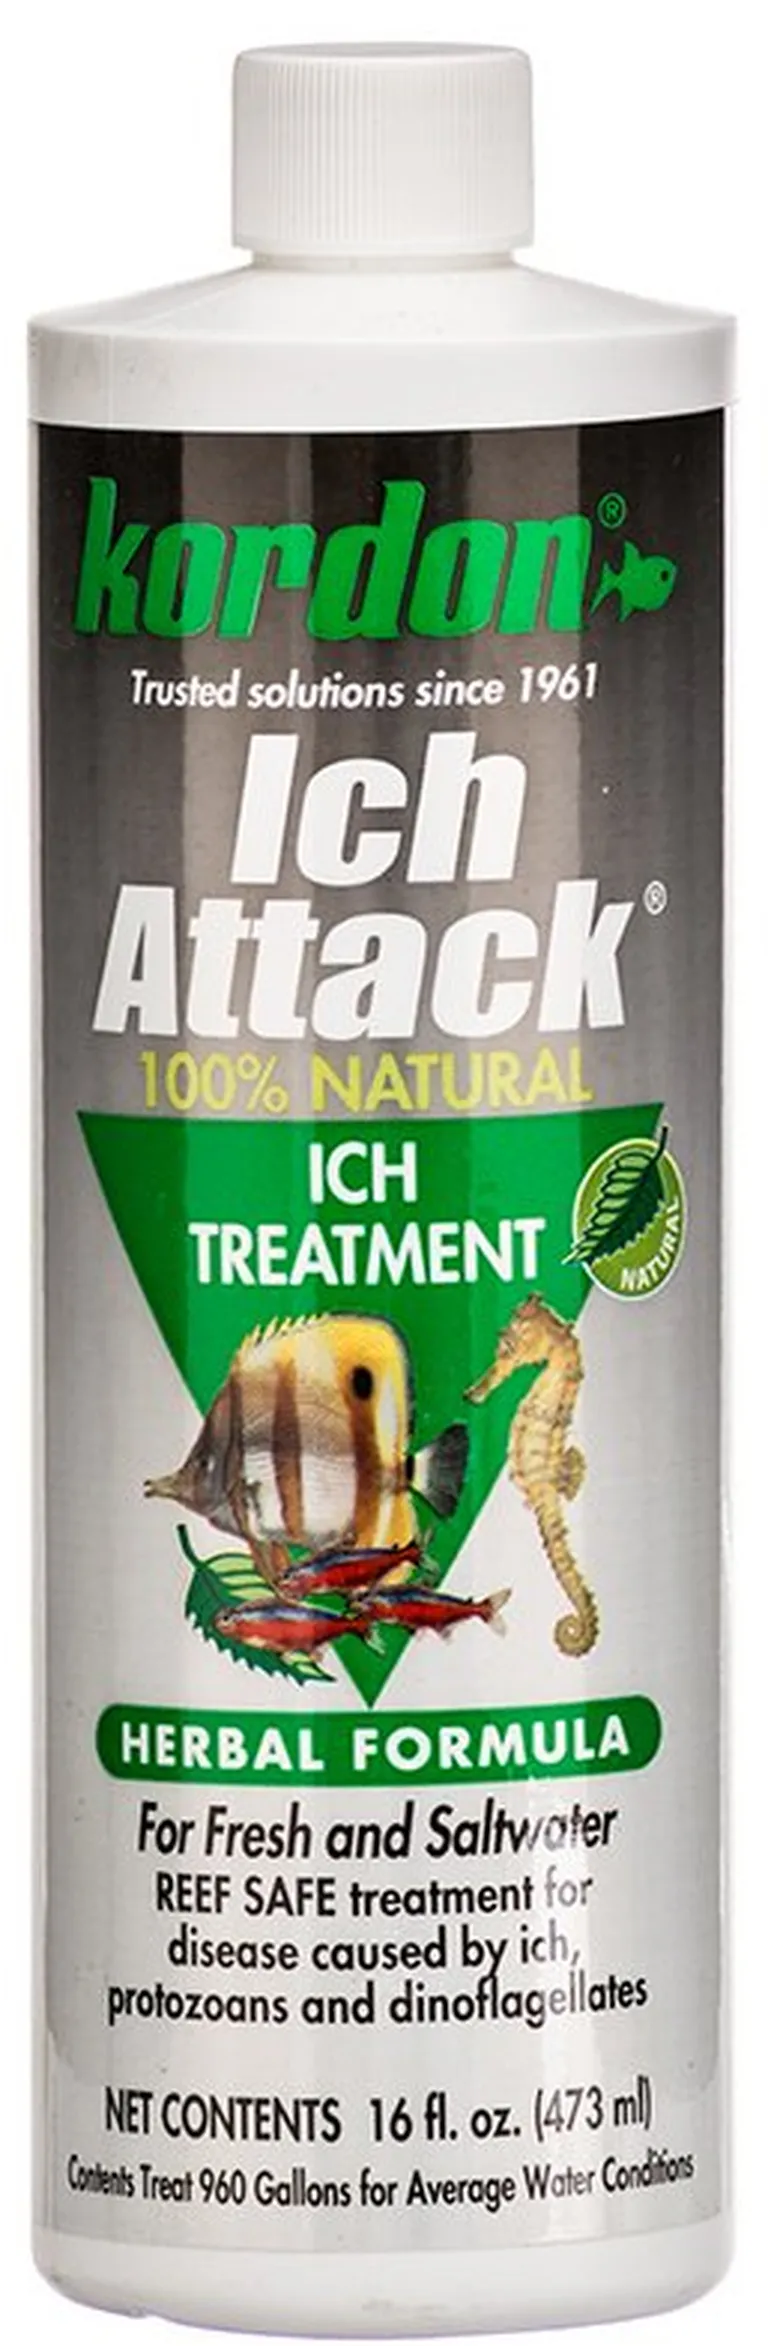 Kordon Ich Attack Ich Treatment Herbal Formula Photo 2